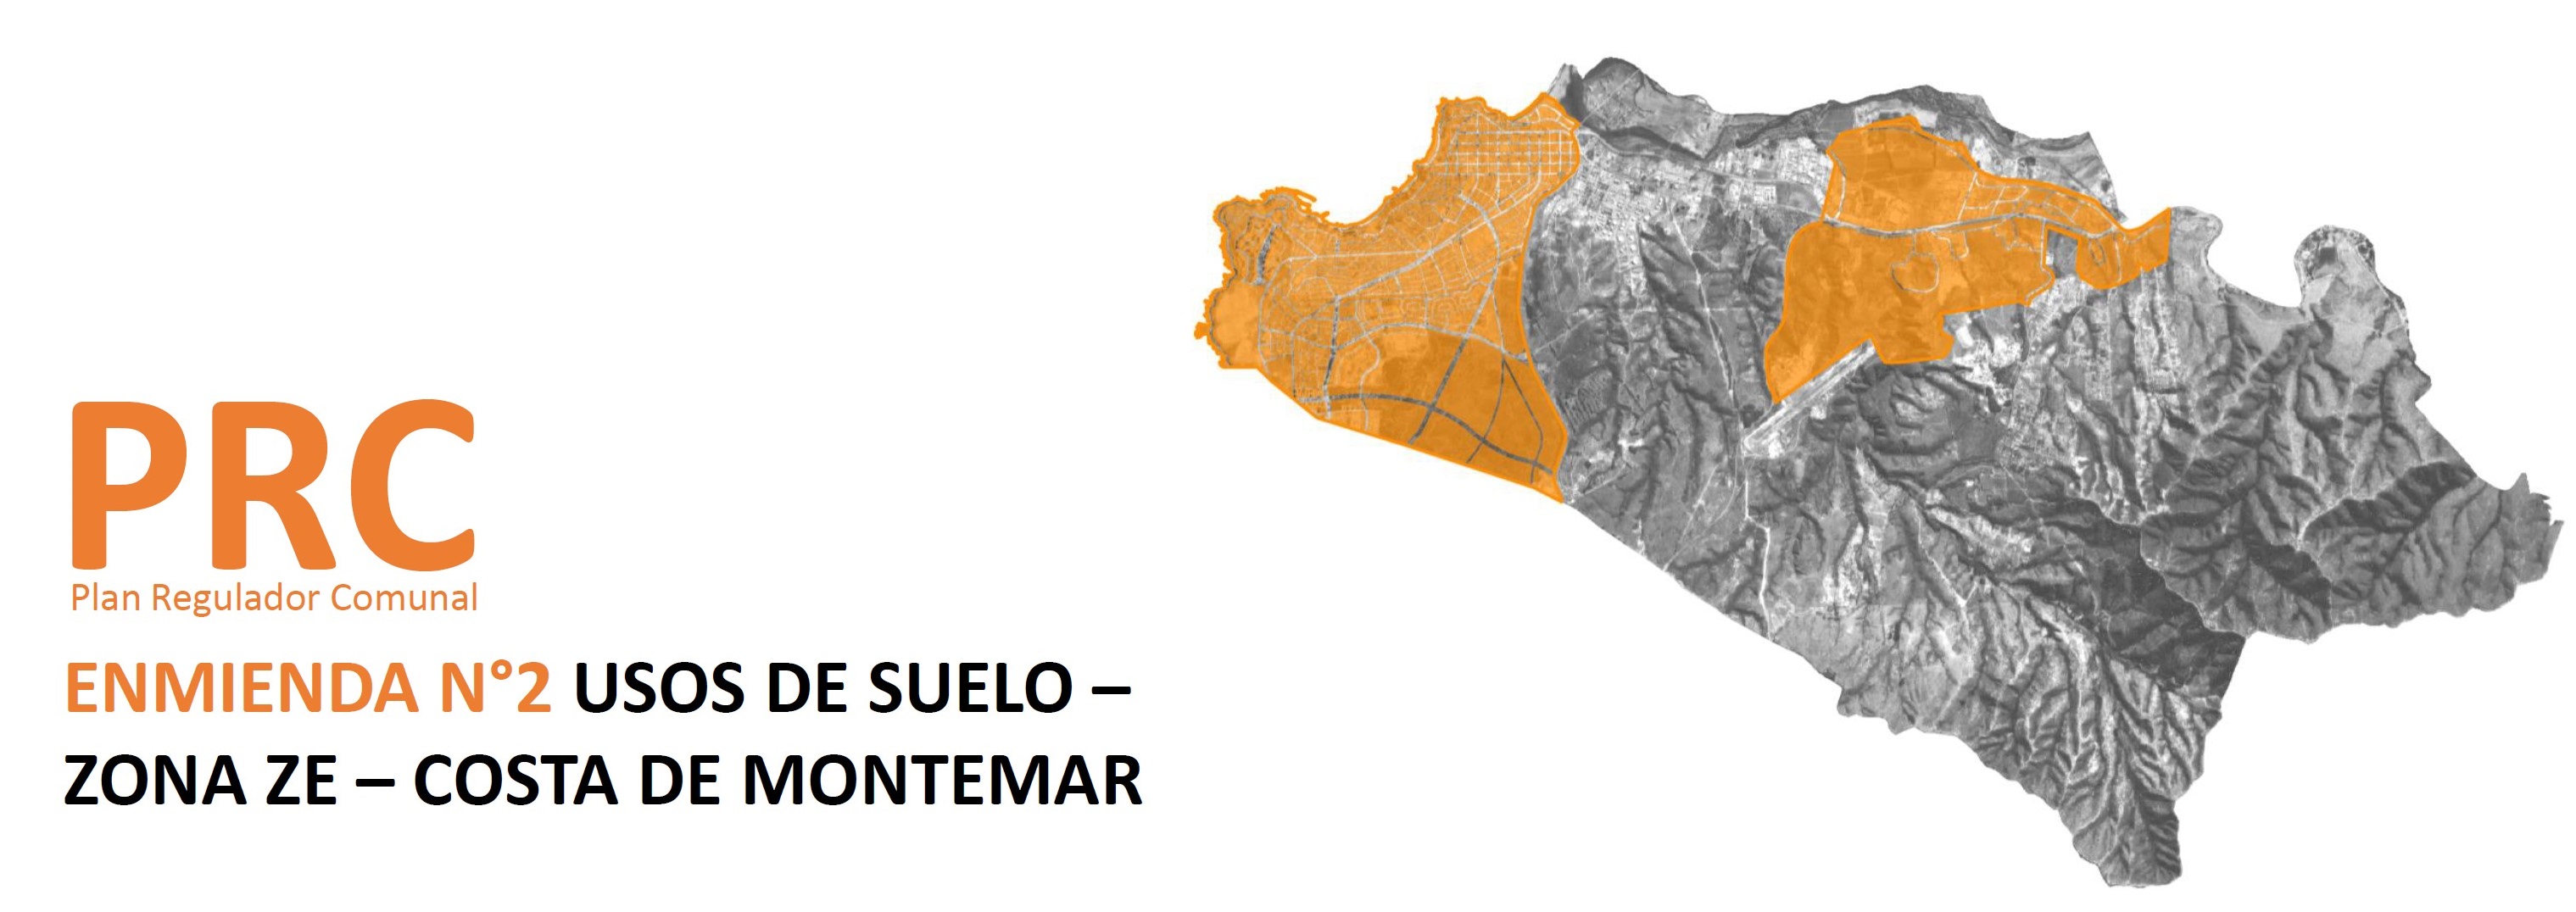 Enmienda N°2 Usos de Suelo - ZE - Costa de Montemar